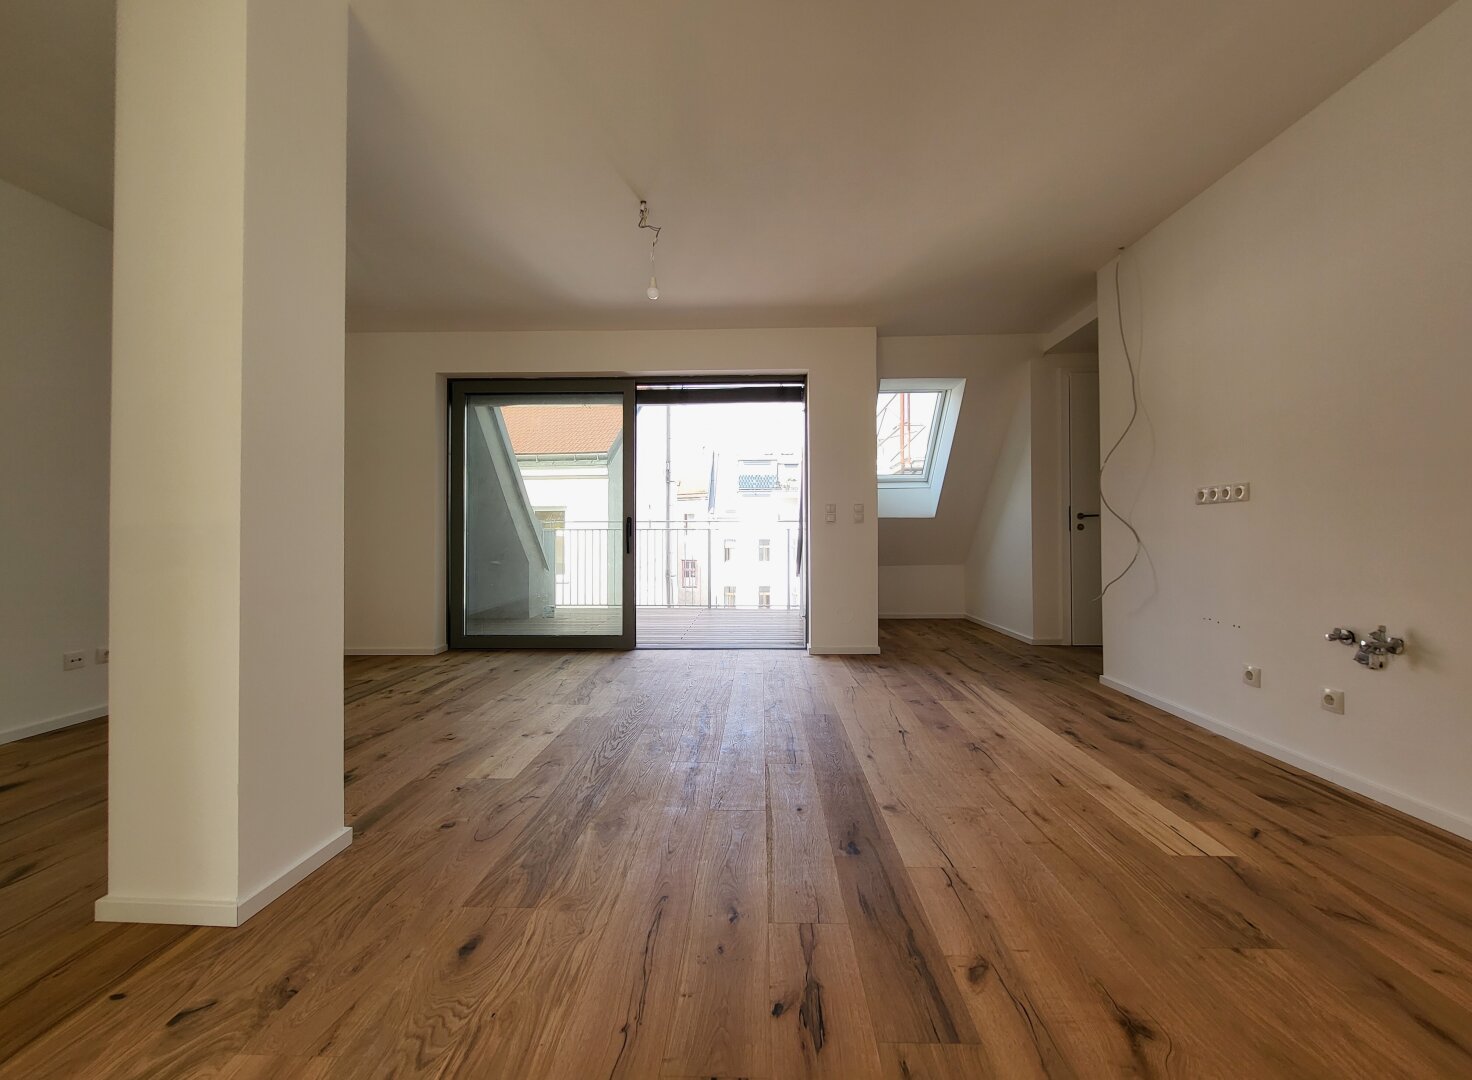 Familienwohnung! | 3 Zimmer mit Loggia | hohe Decken, Sonnenlicht und Lebensqualität! Nähe U-Bahn